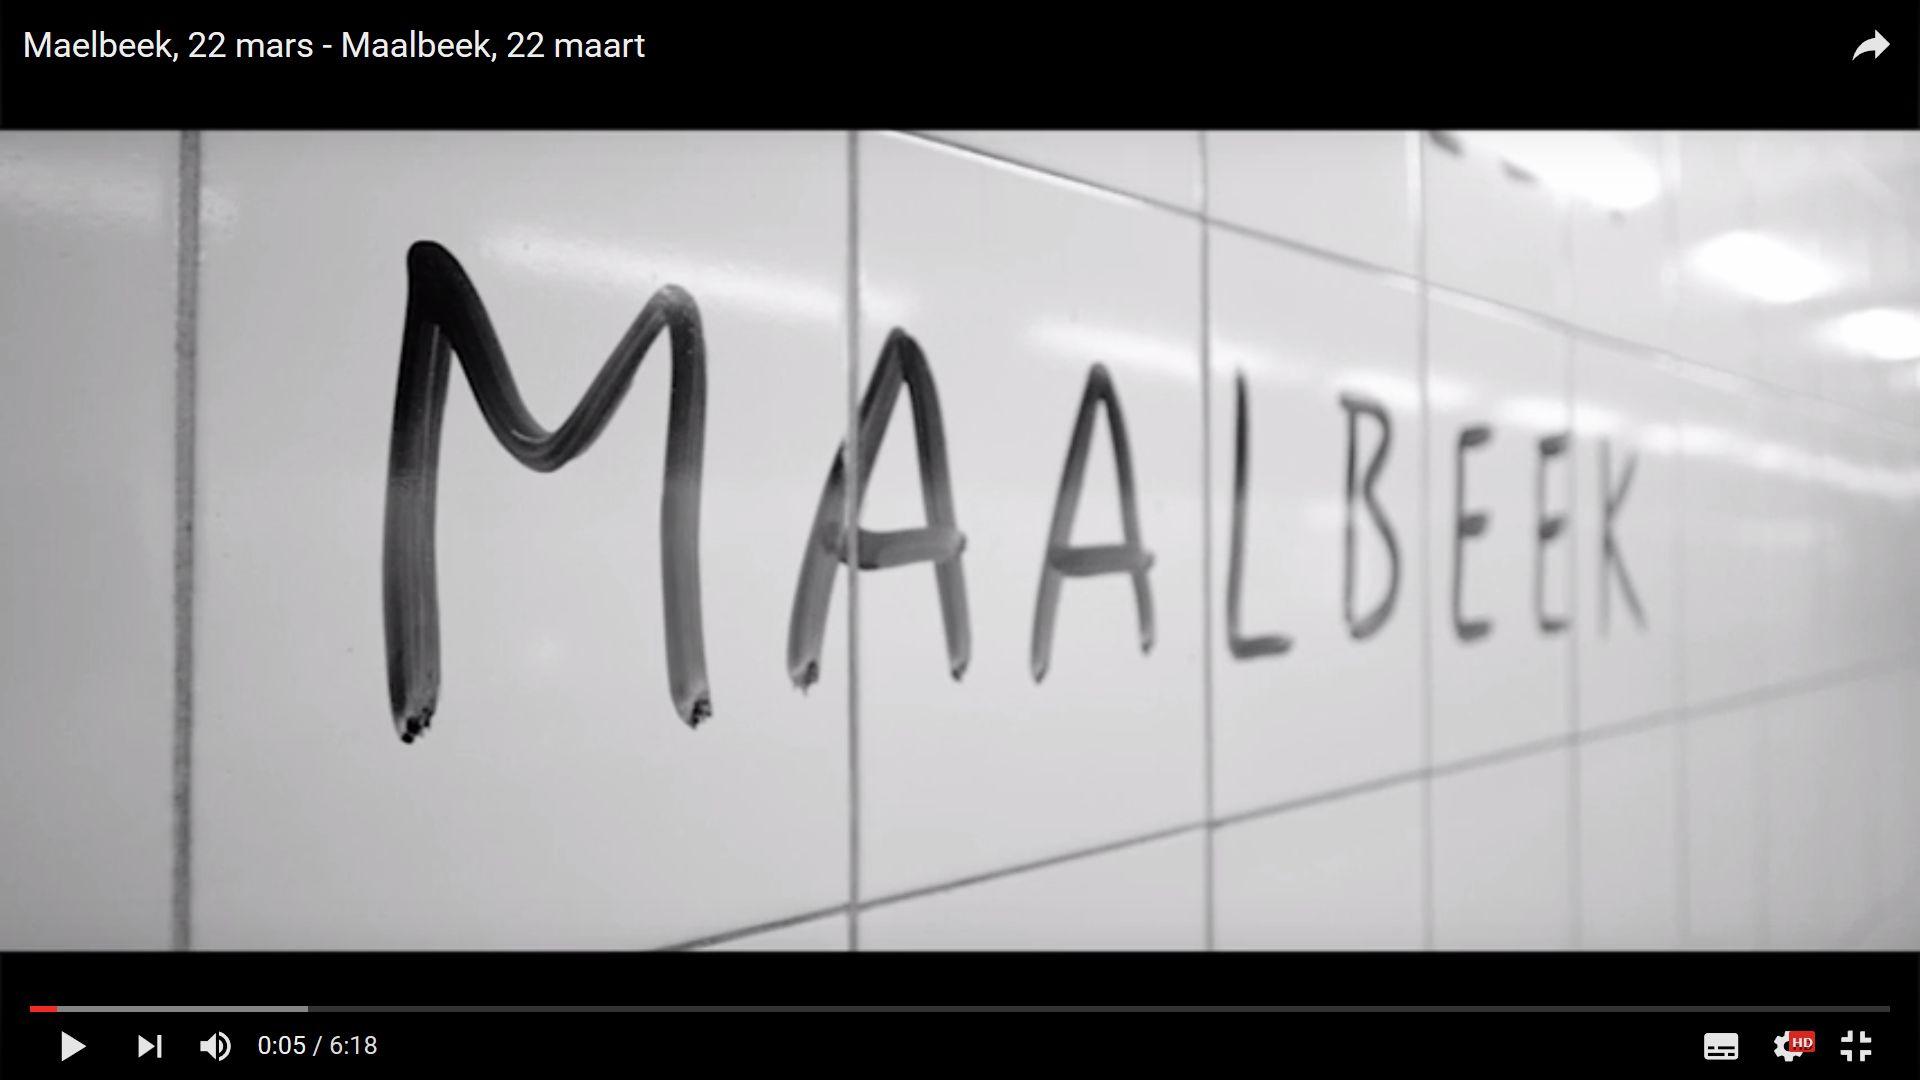 La station de métro de Maalbeek a rouvert récemment. Les agents et usagers de la STIB y évoquent leur ressenti au moment des attentats et surtout après.